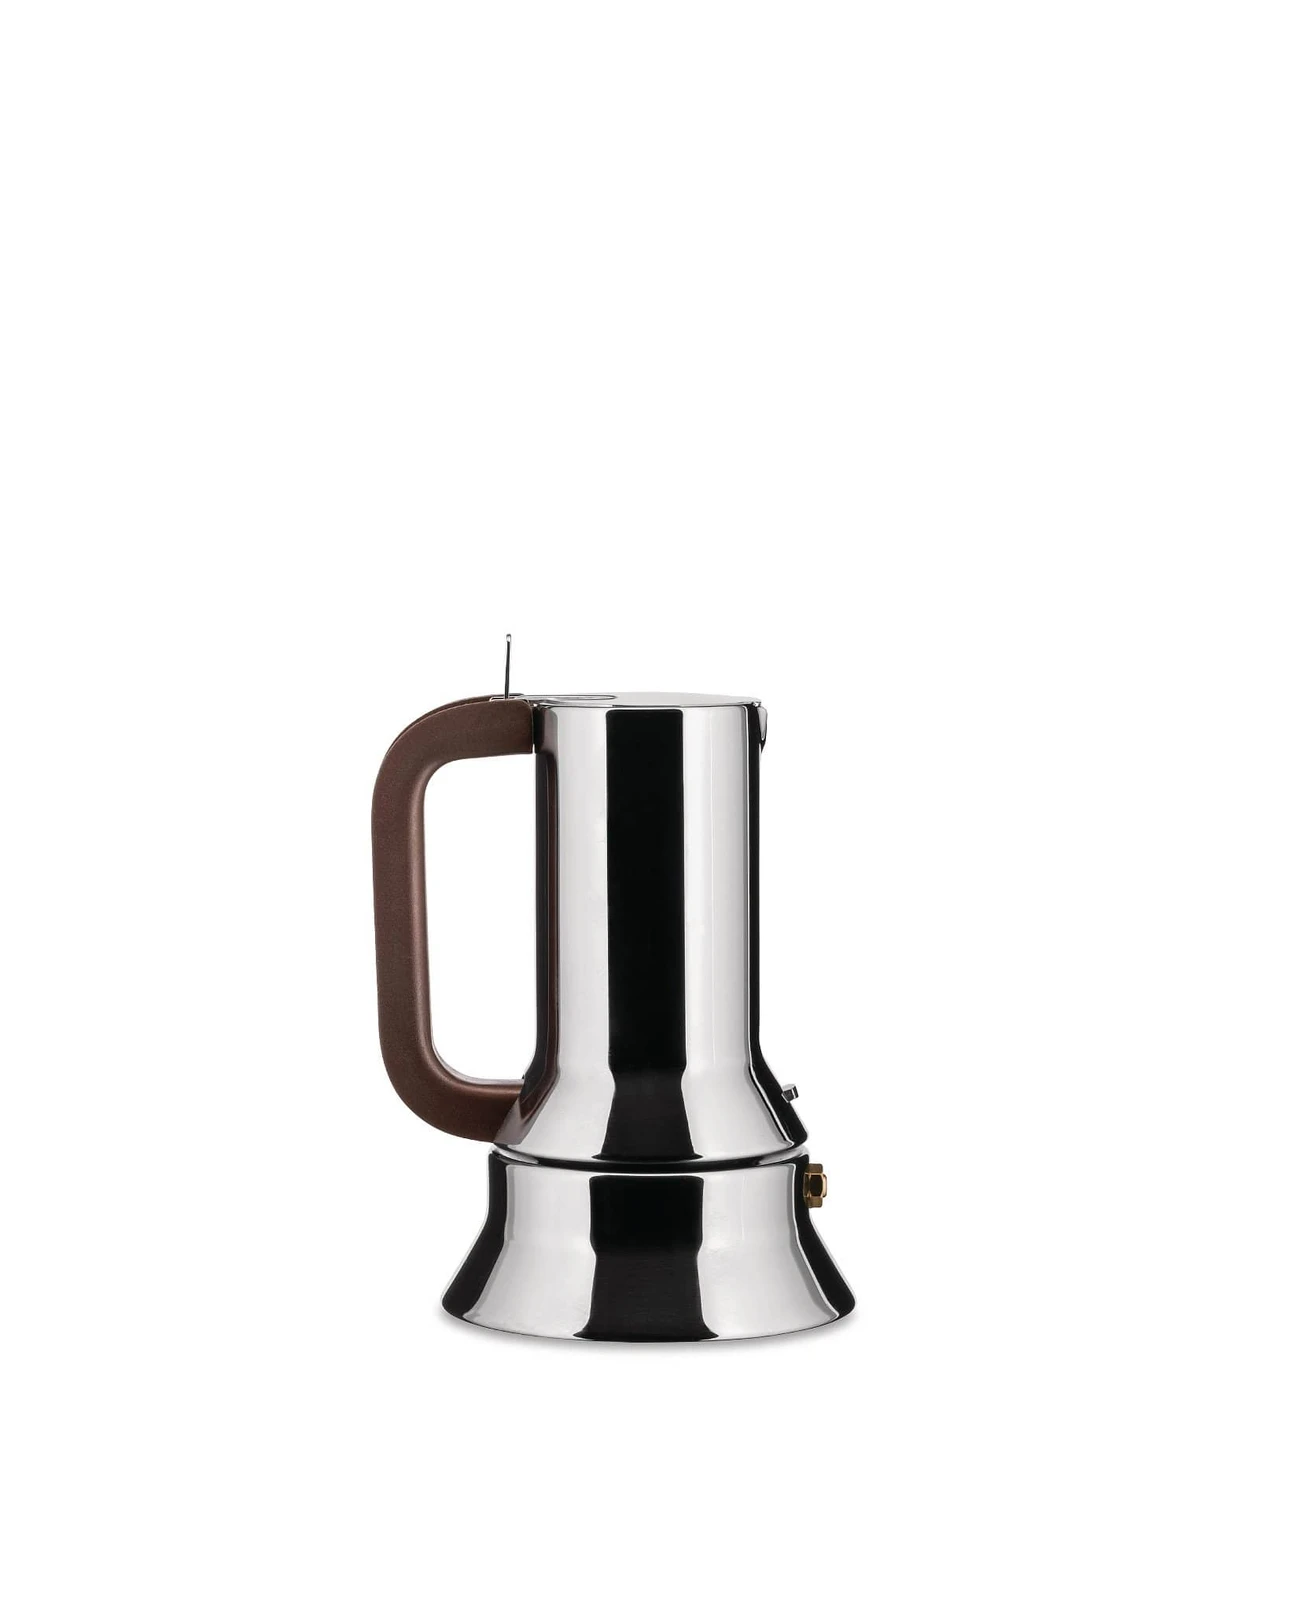 Alessi Espresso coffee maker 9090, 3 cups